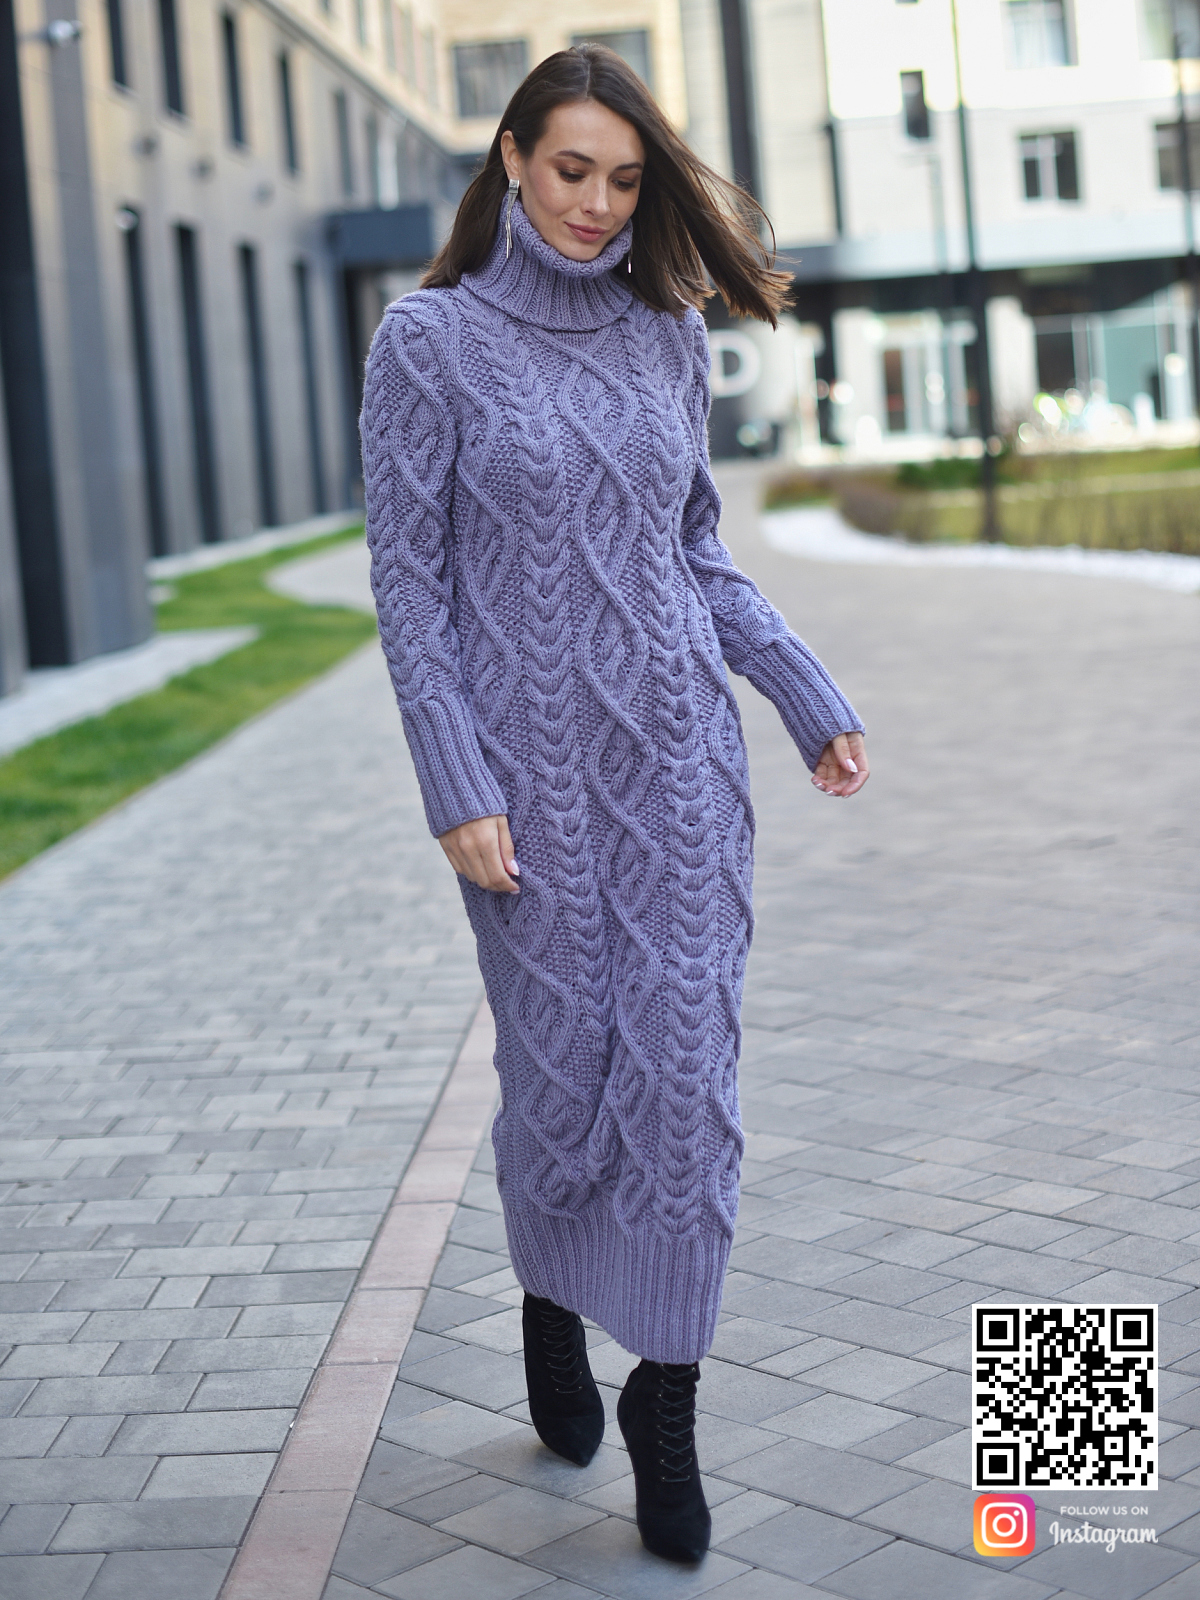 На седьмой фотографии теплое сиреневое вязаное платье из шерсти в интернет-магазине связанной одежды ручной работы Shapar.